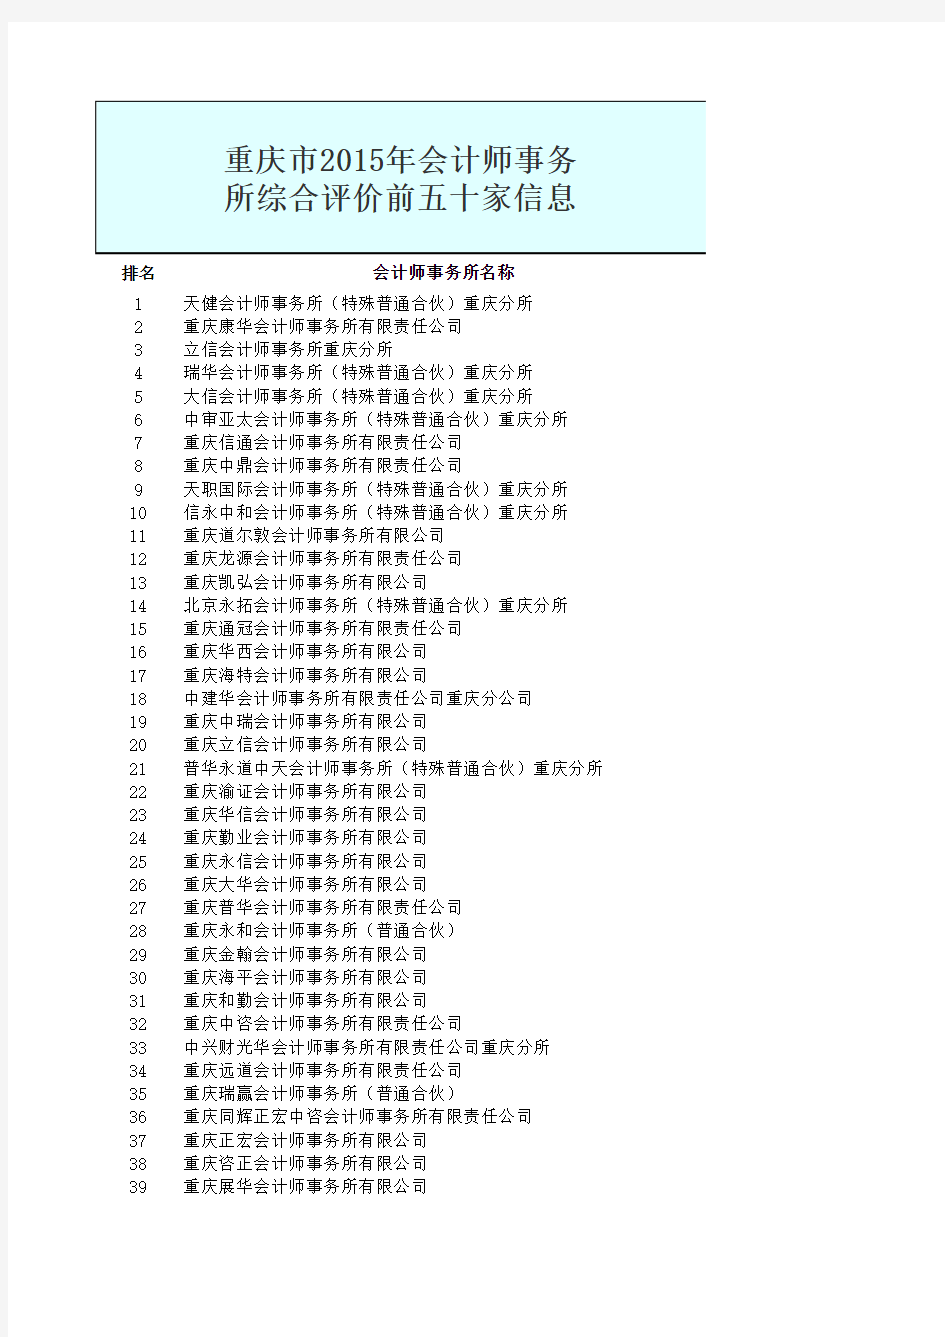 重庆市2015年会计师事务所前50排名